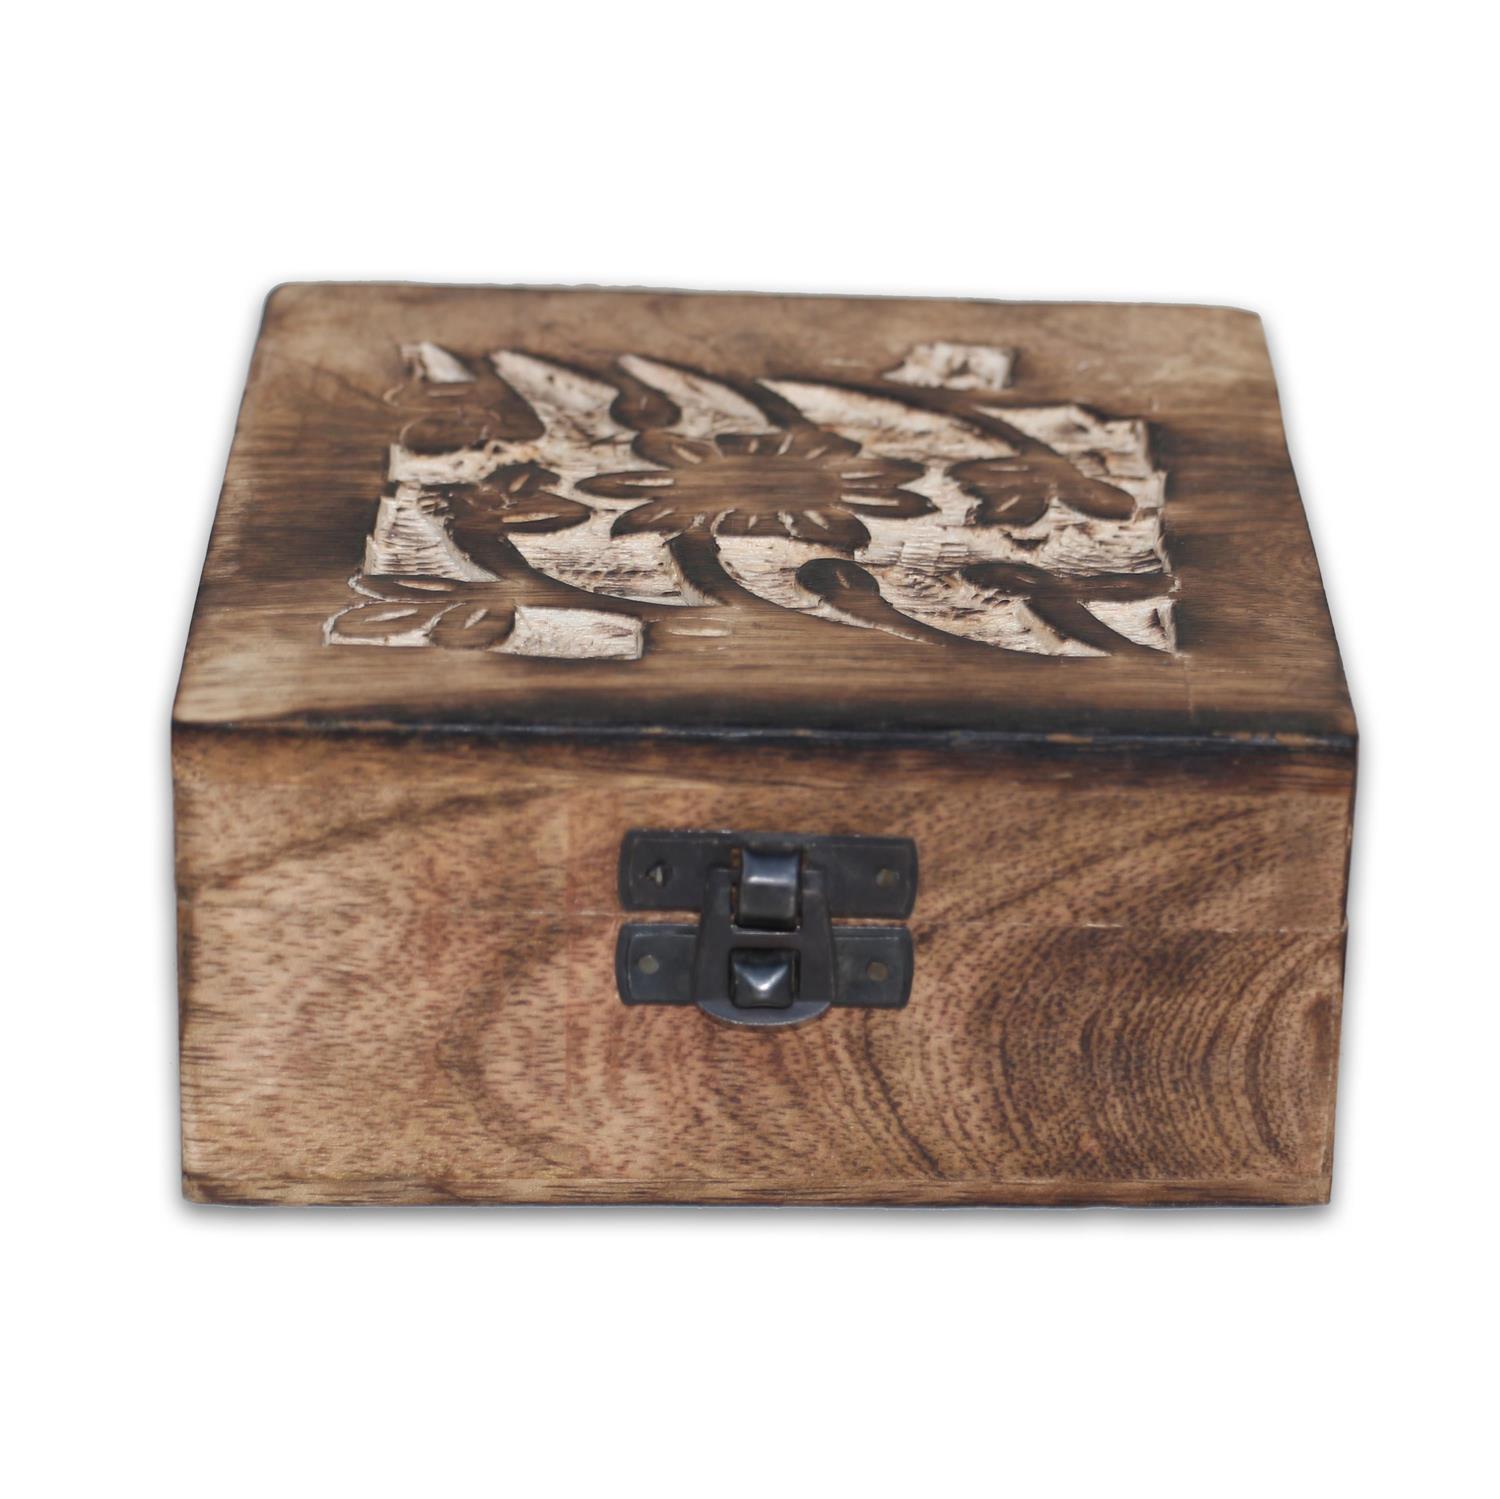 Orientalische dekorative Box mit eingravierte Blume 12,5x12,5x6cm